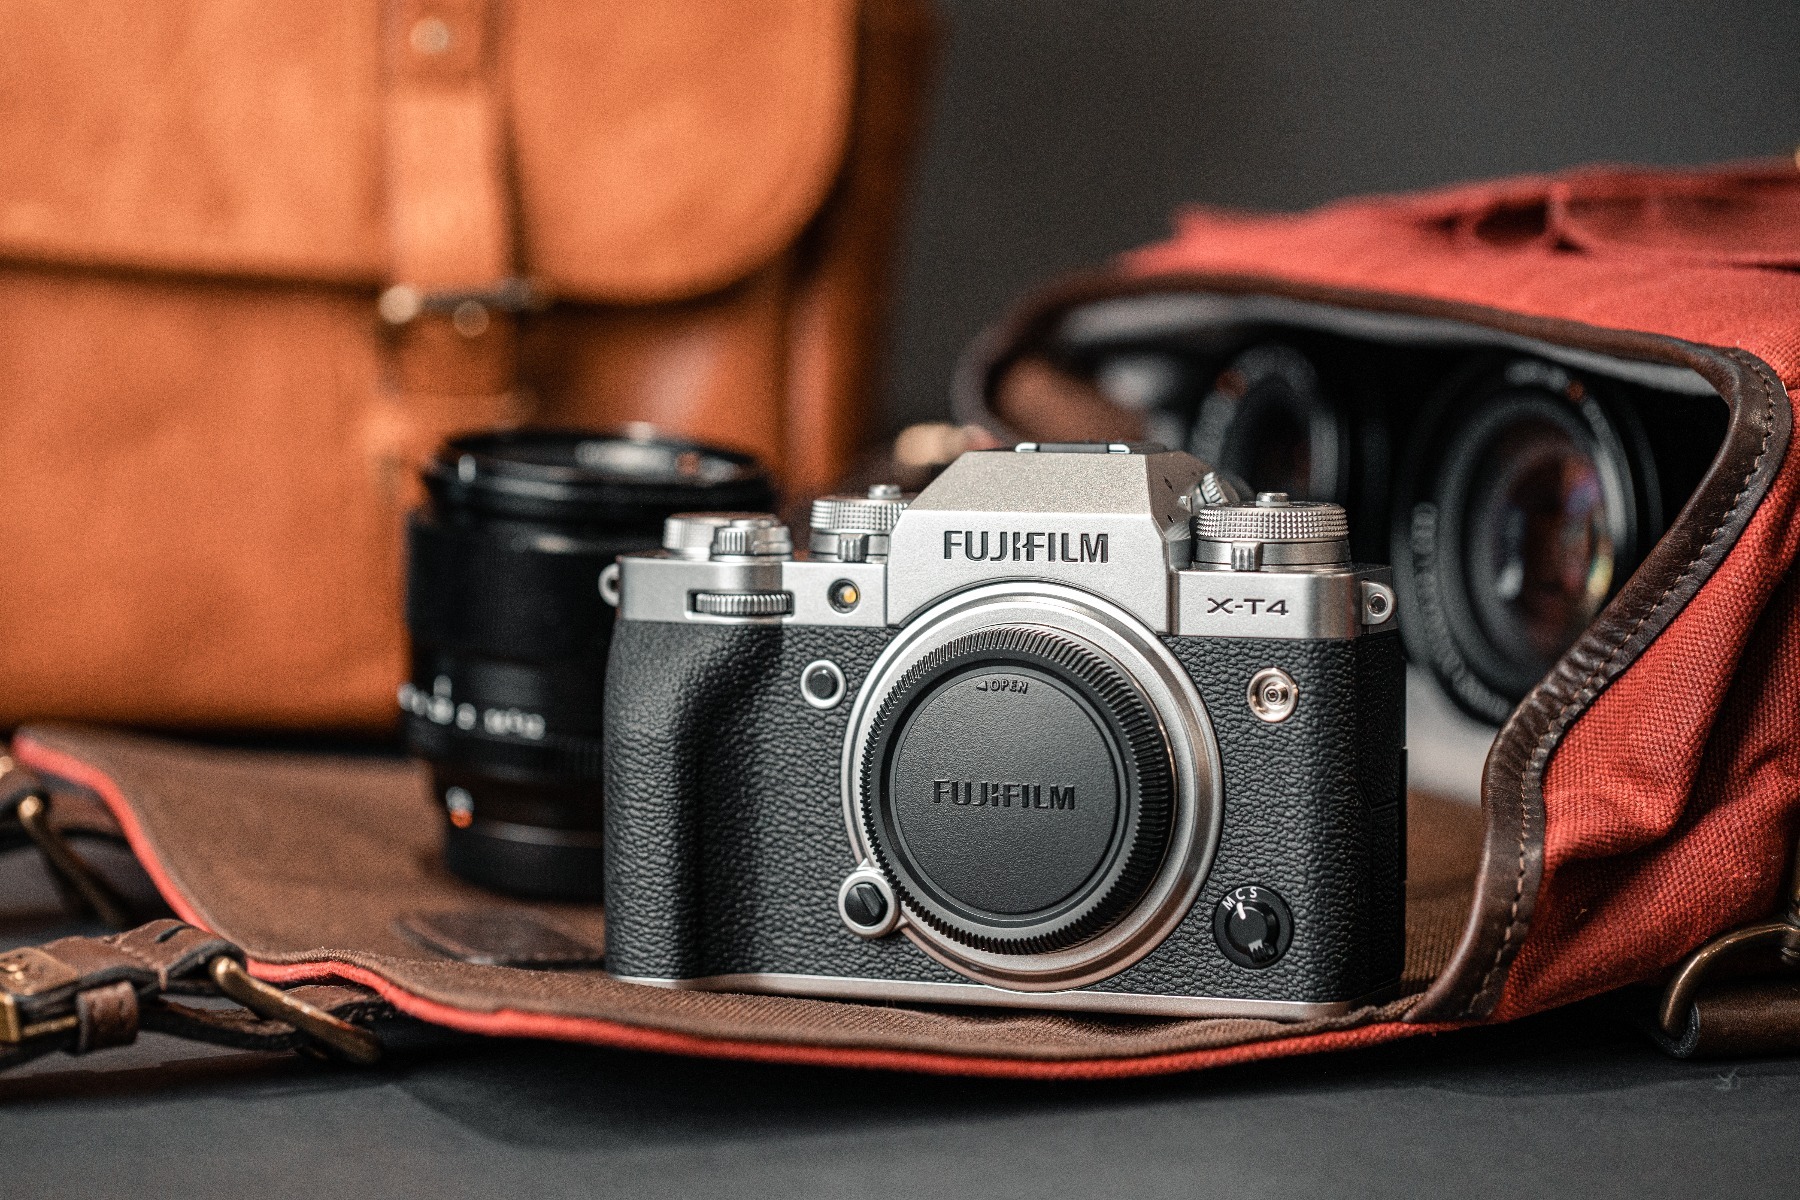 NÂNG ĐỜI CÔNG NGHỆ - CÂN TRỌN ĐAM MÊ, khuyến mãi tháng 3 giảm giá máy ảnh và ống kính Fujifilm